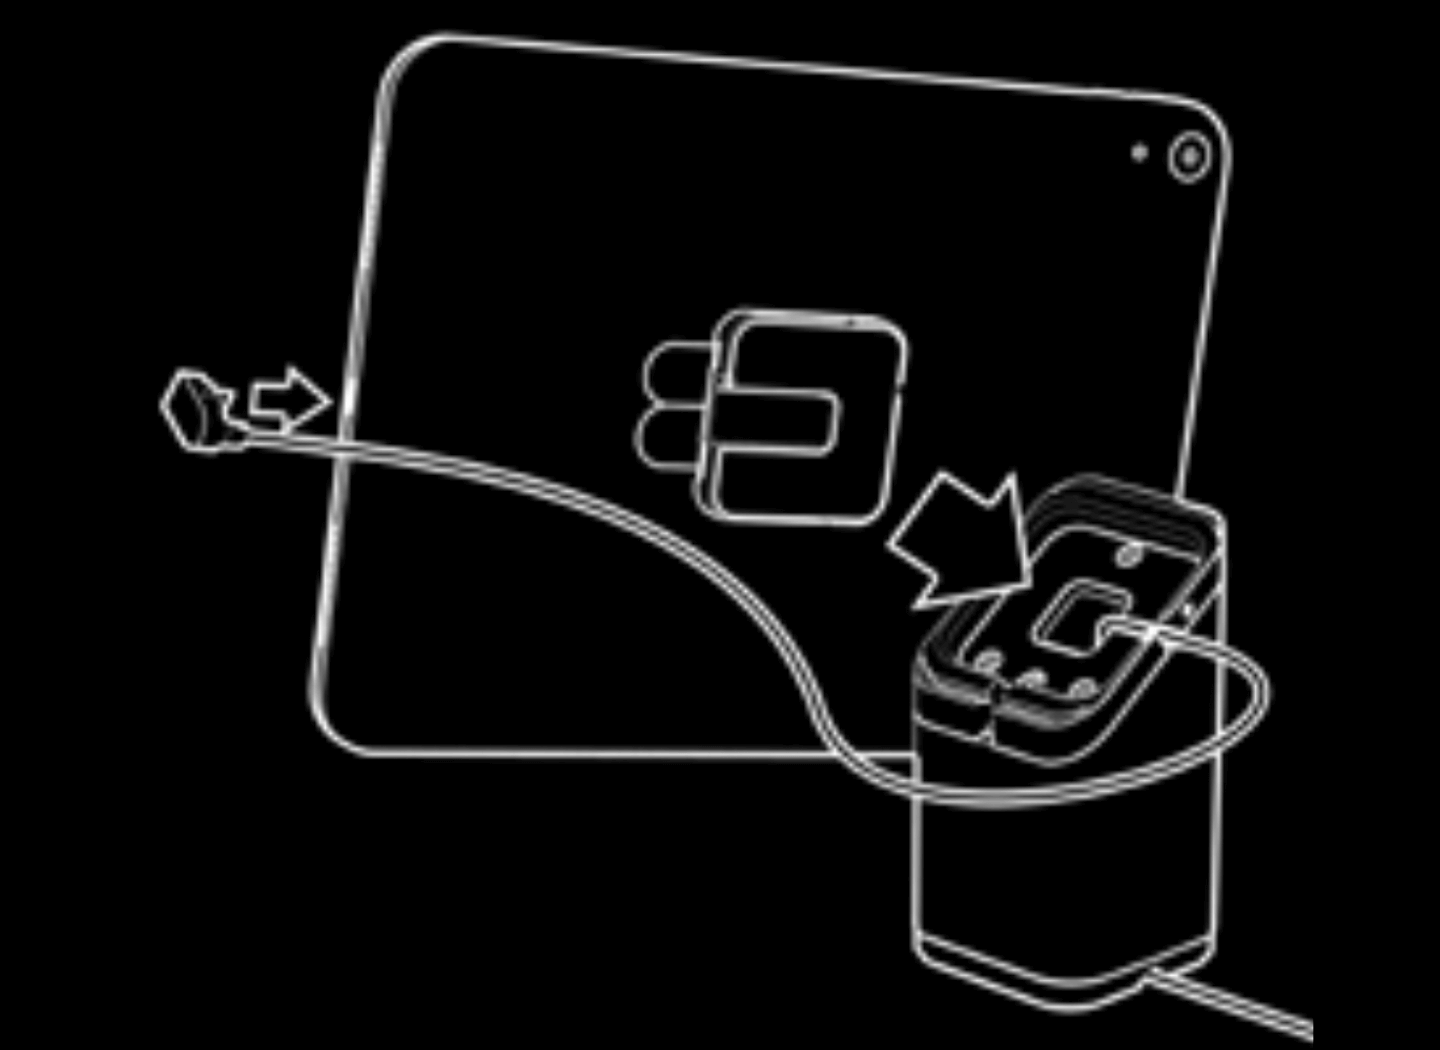 Afbeelding van een universele standaard waarin te zien is dat een kabel op de tablet wordt aangesloten en de tablet op de basis wordt gezet.